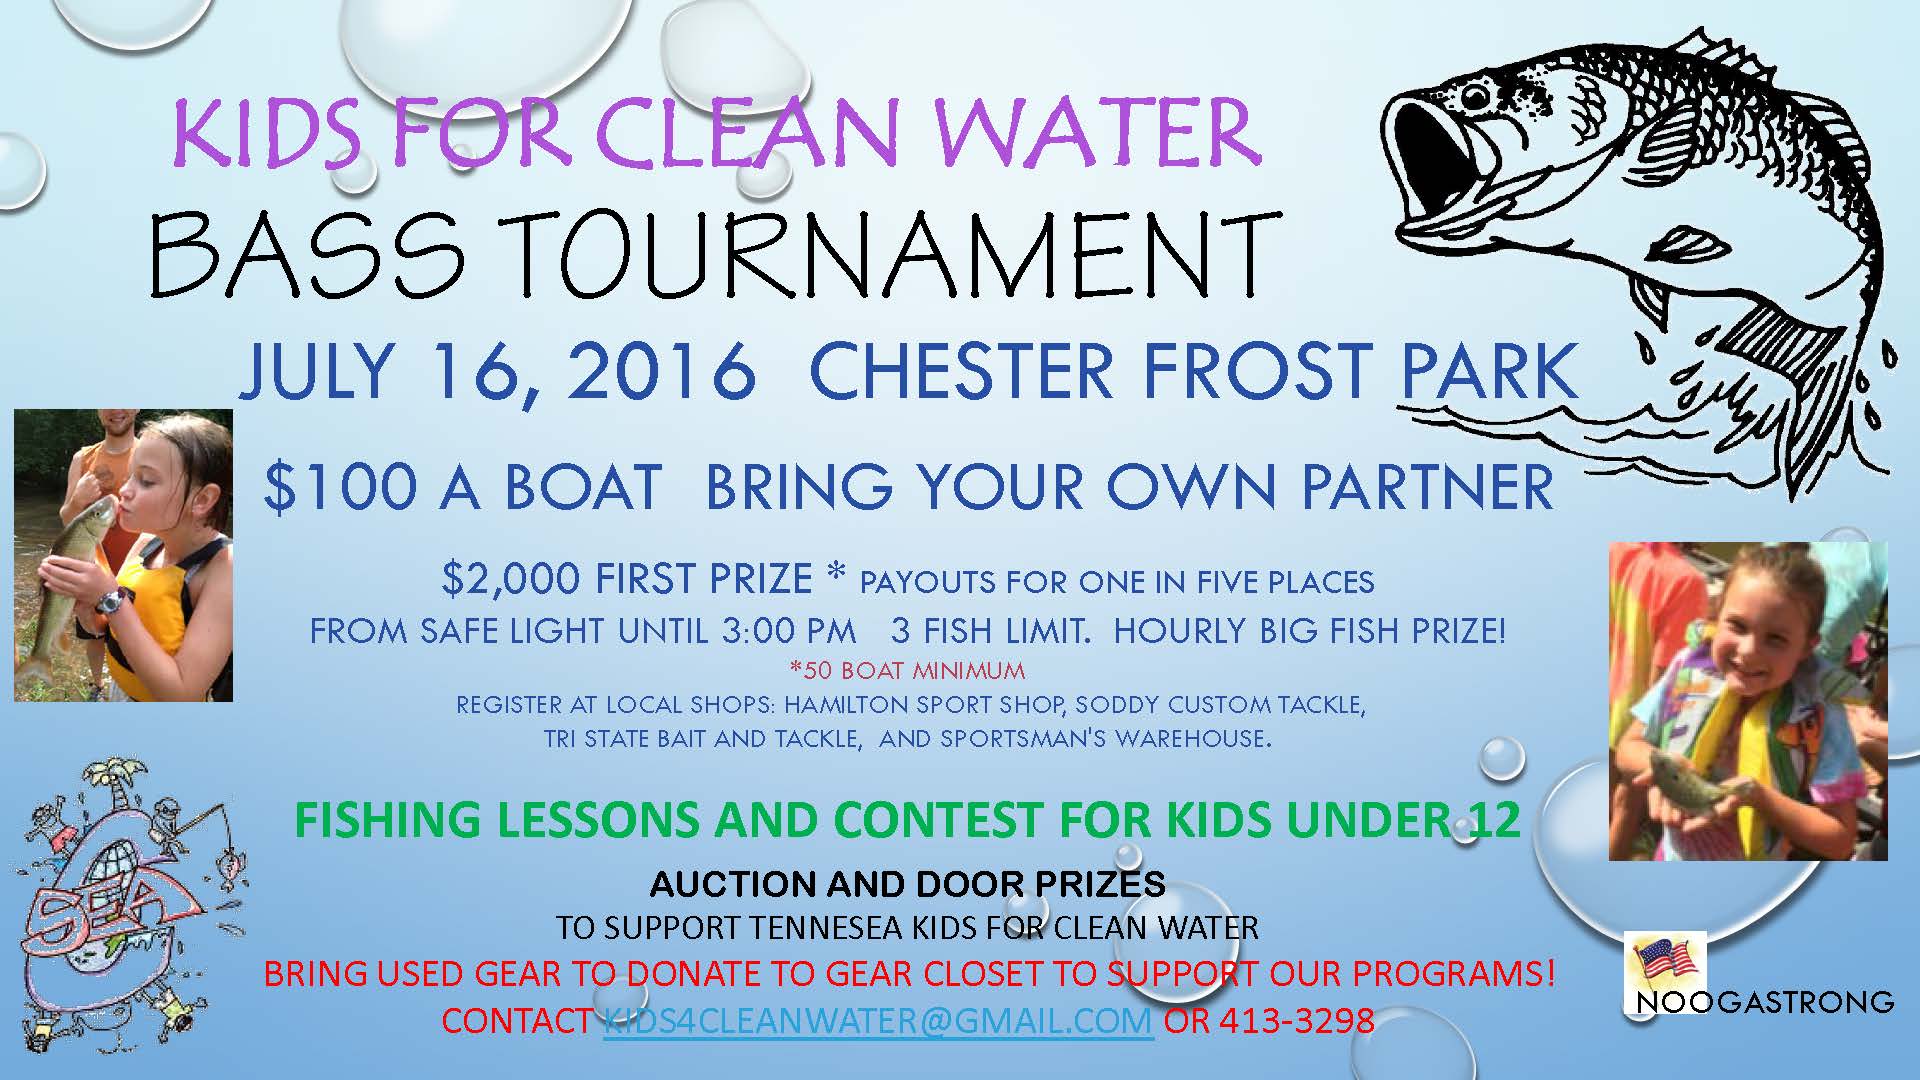 Kids 4 Clean Water Bass Tournament - The Gear Closet